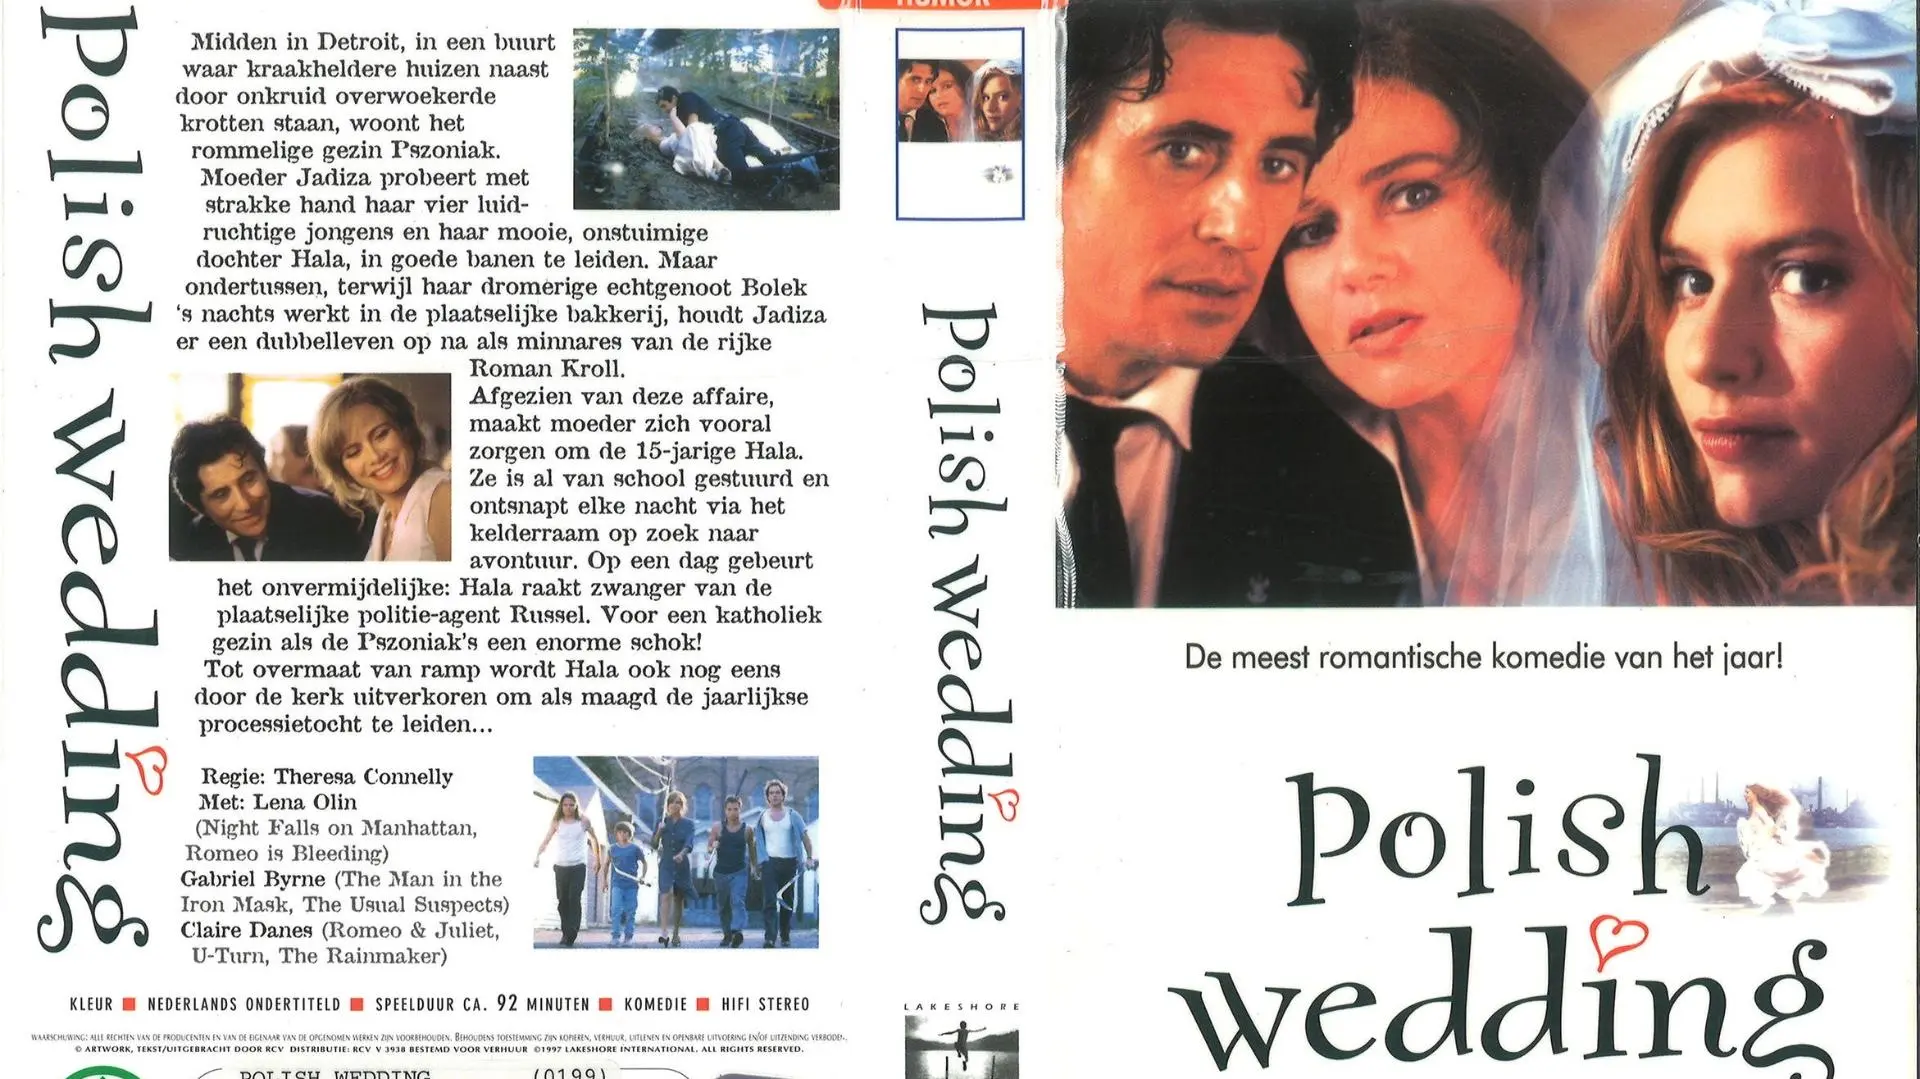 La boda polaca_peliplat